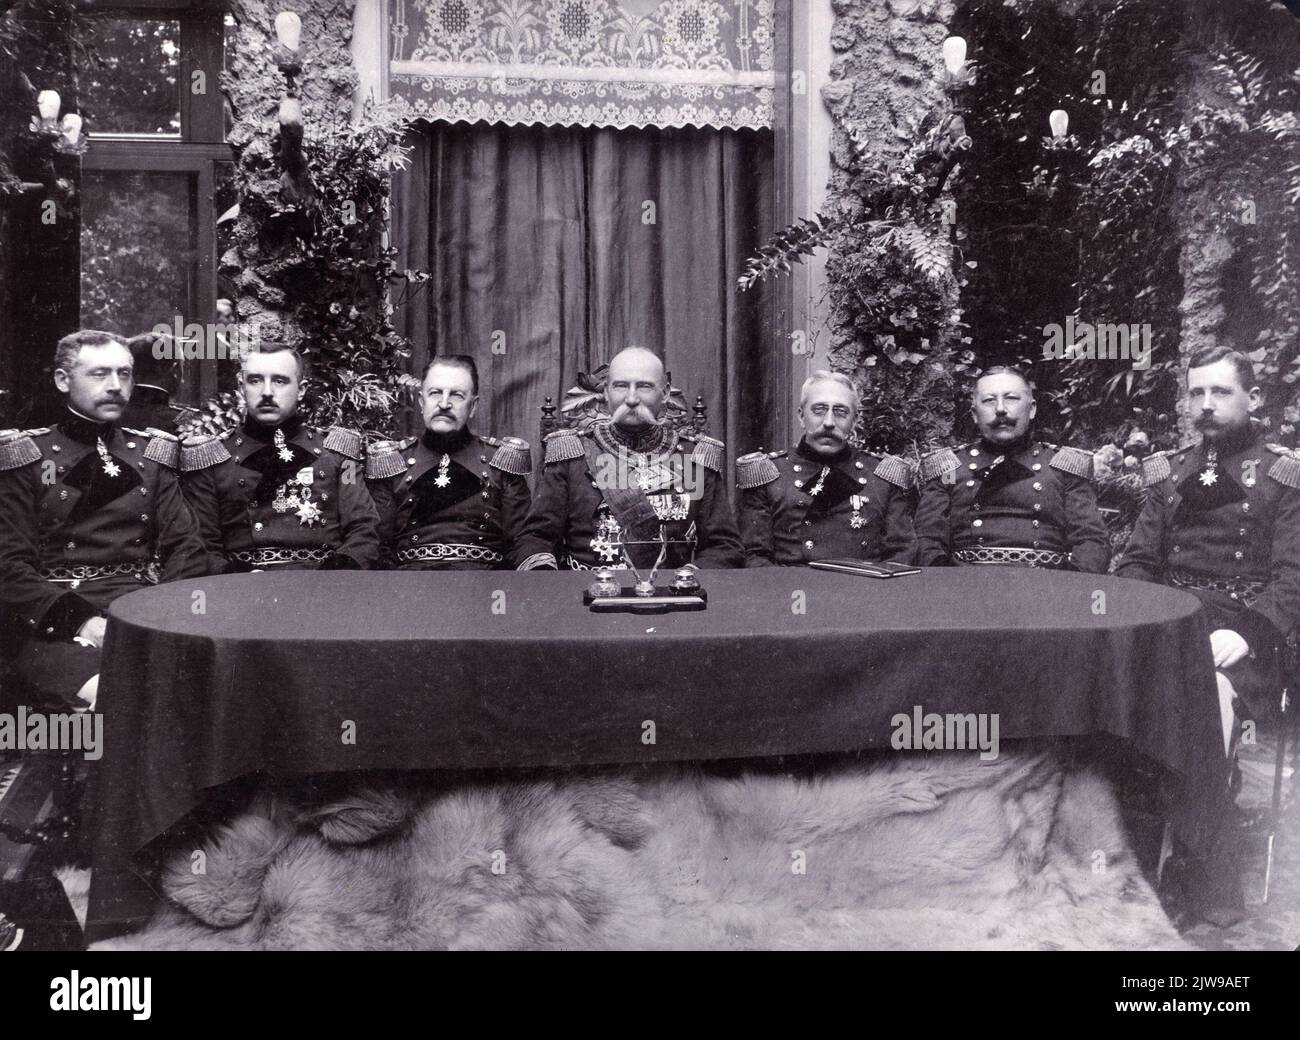 Gruppenportrait des Kapitels des souveränen Malteserordens in Utrecht. Mit Füßen, an einem Tisch sitzend. Von links nach rechts: J.F.J.F. Baron van Dordt an Medler (Ritter des ersten Kapitels), Jonkheer E.B.F.F. Wittert van Hoogland (Kanzler), F.A.J. Baron van Wijnbergen (Koadjutor), J.J.G. Baron van Voorst to Voorst (Bailiff), A.M.J.E.A. Baron van Lamsweerde (Werkmeester), G.F.M. Baron van Hugenpoth an Aerdt (Schatzmeister) und E.O.J.M. Baron von Hövell bis Westerflier (Ritter im zweiten Kapitel). Stockfoto